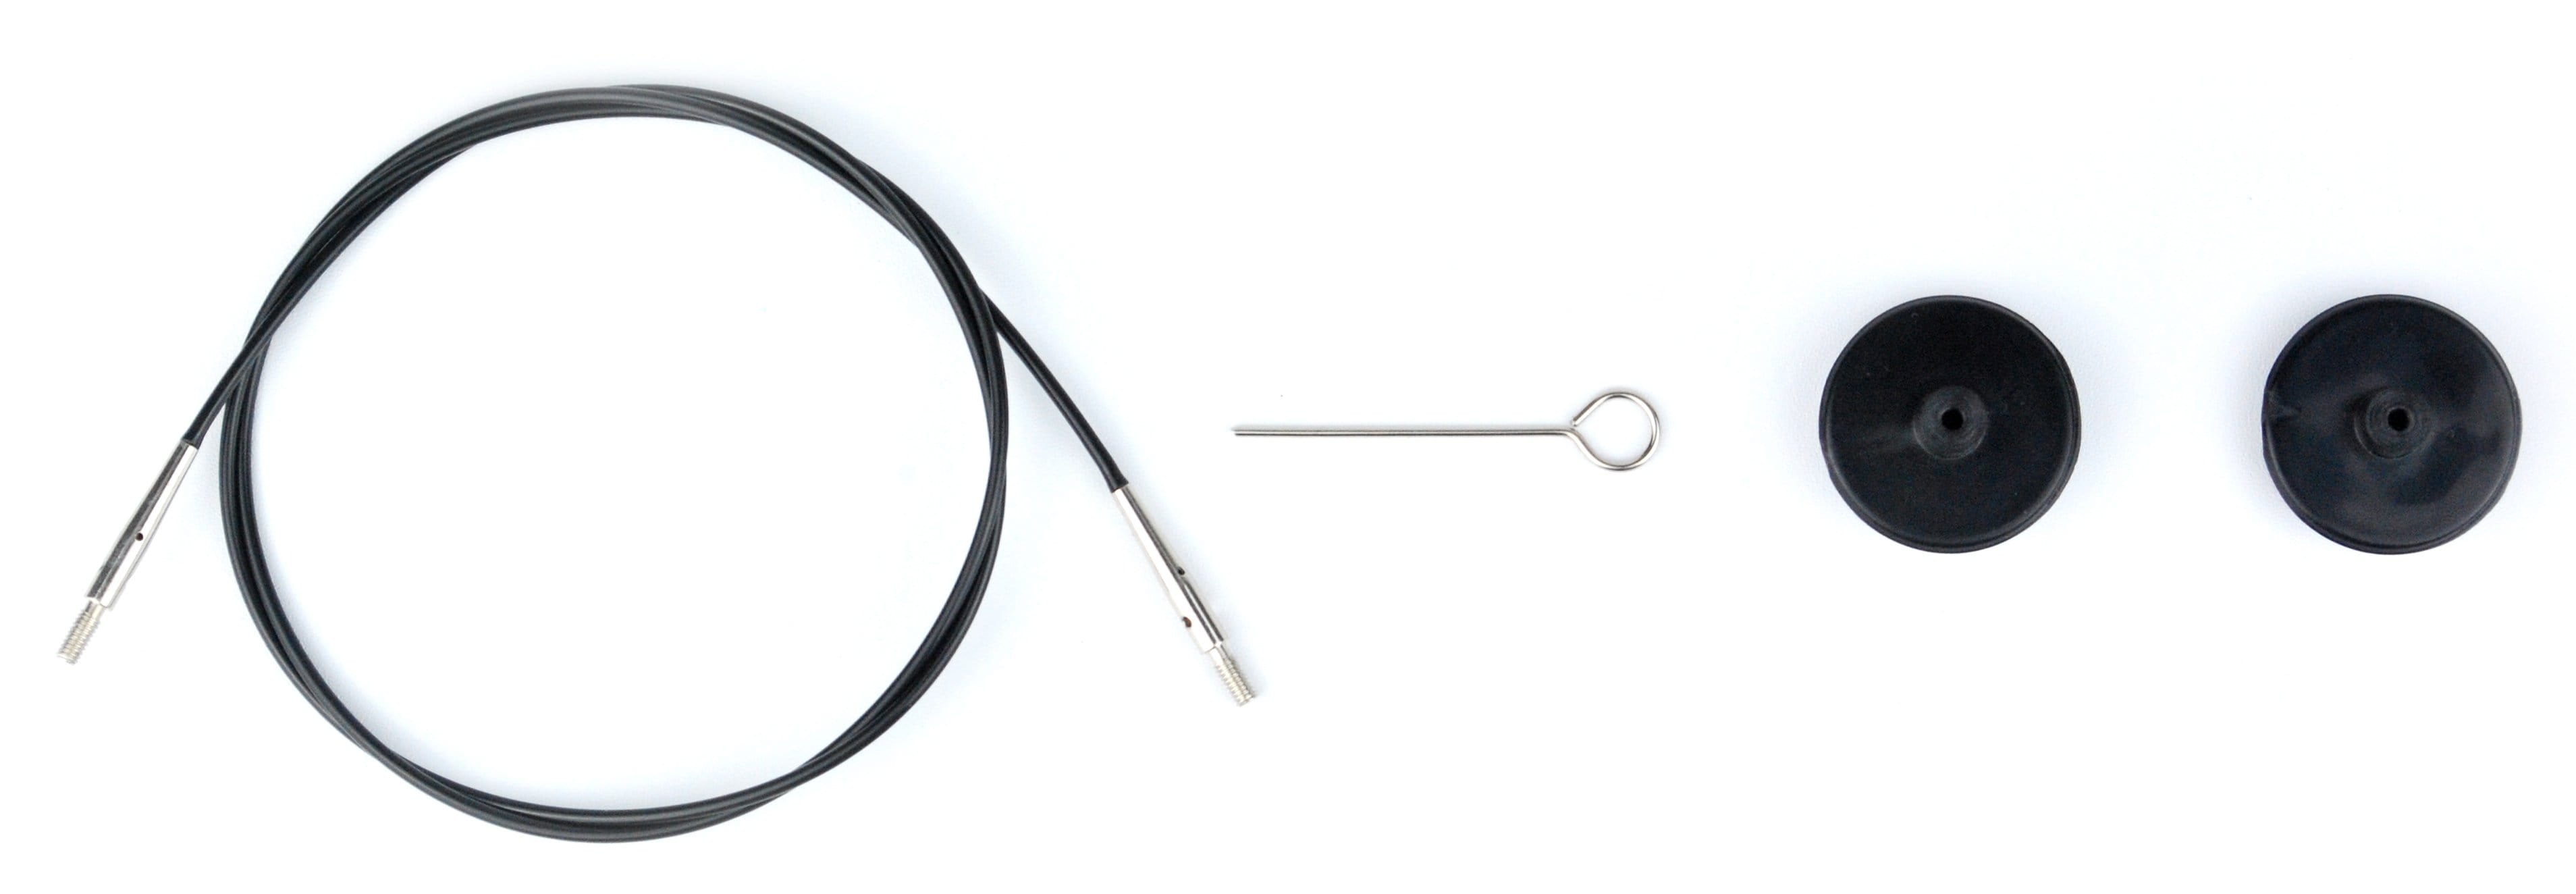 Interchangeable Needle Cords - Lykke